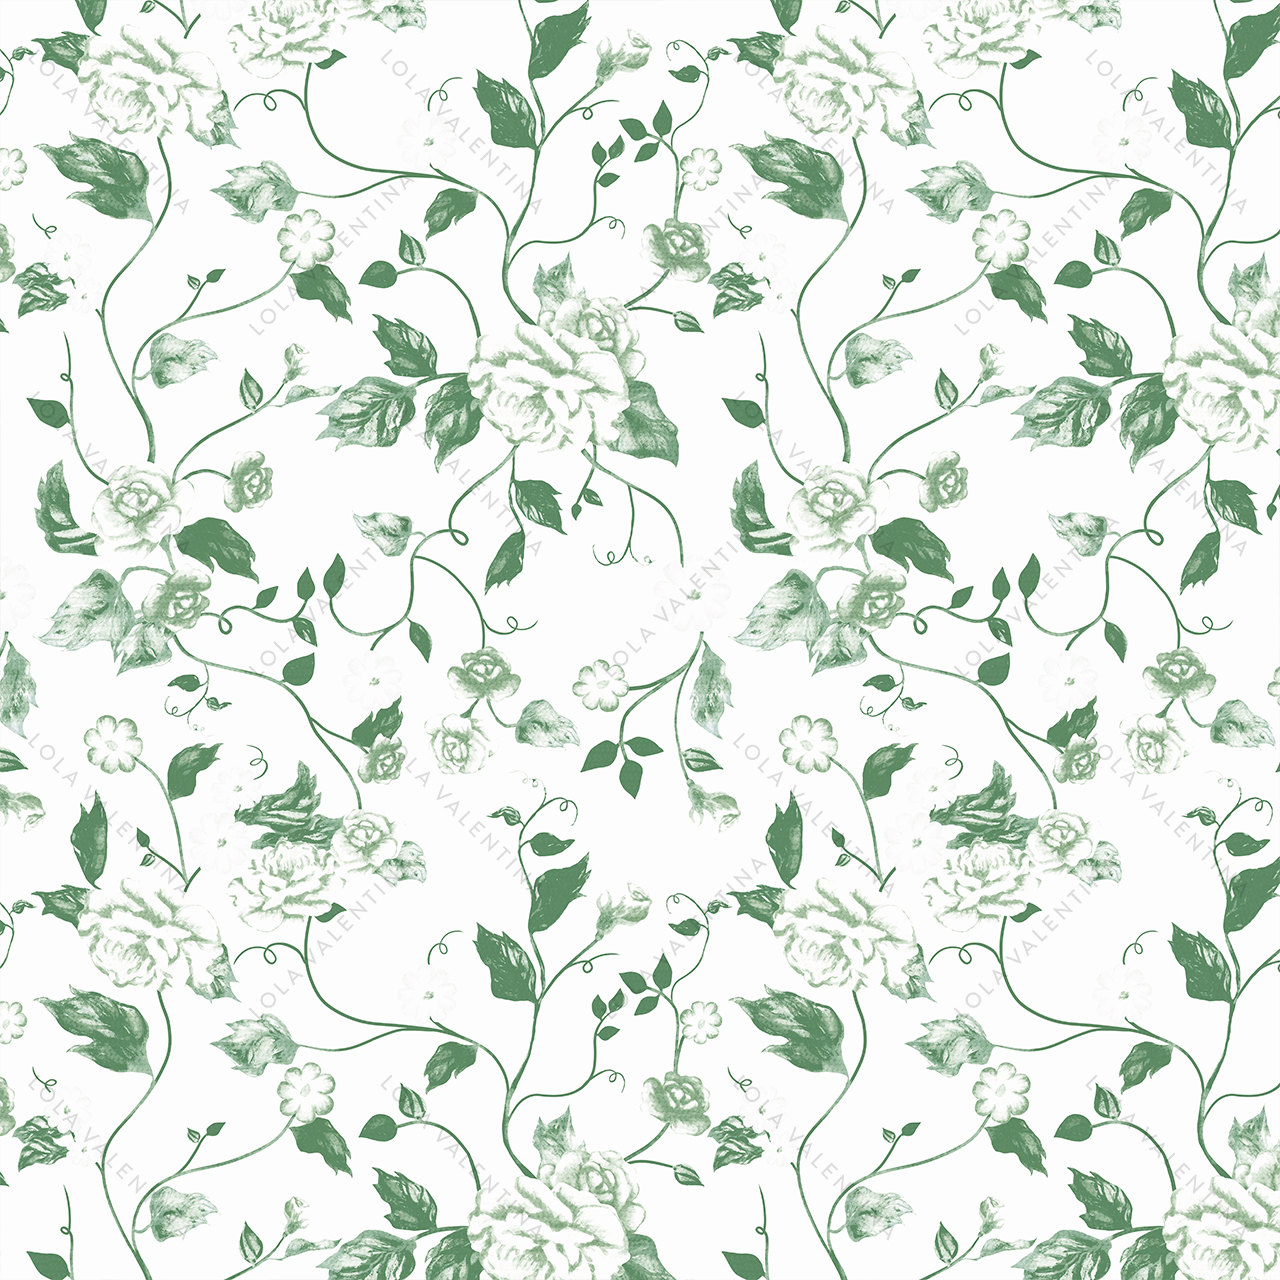 Floral - Green - Event Linen & Decor Rentals